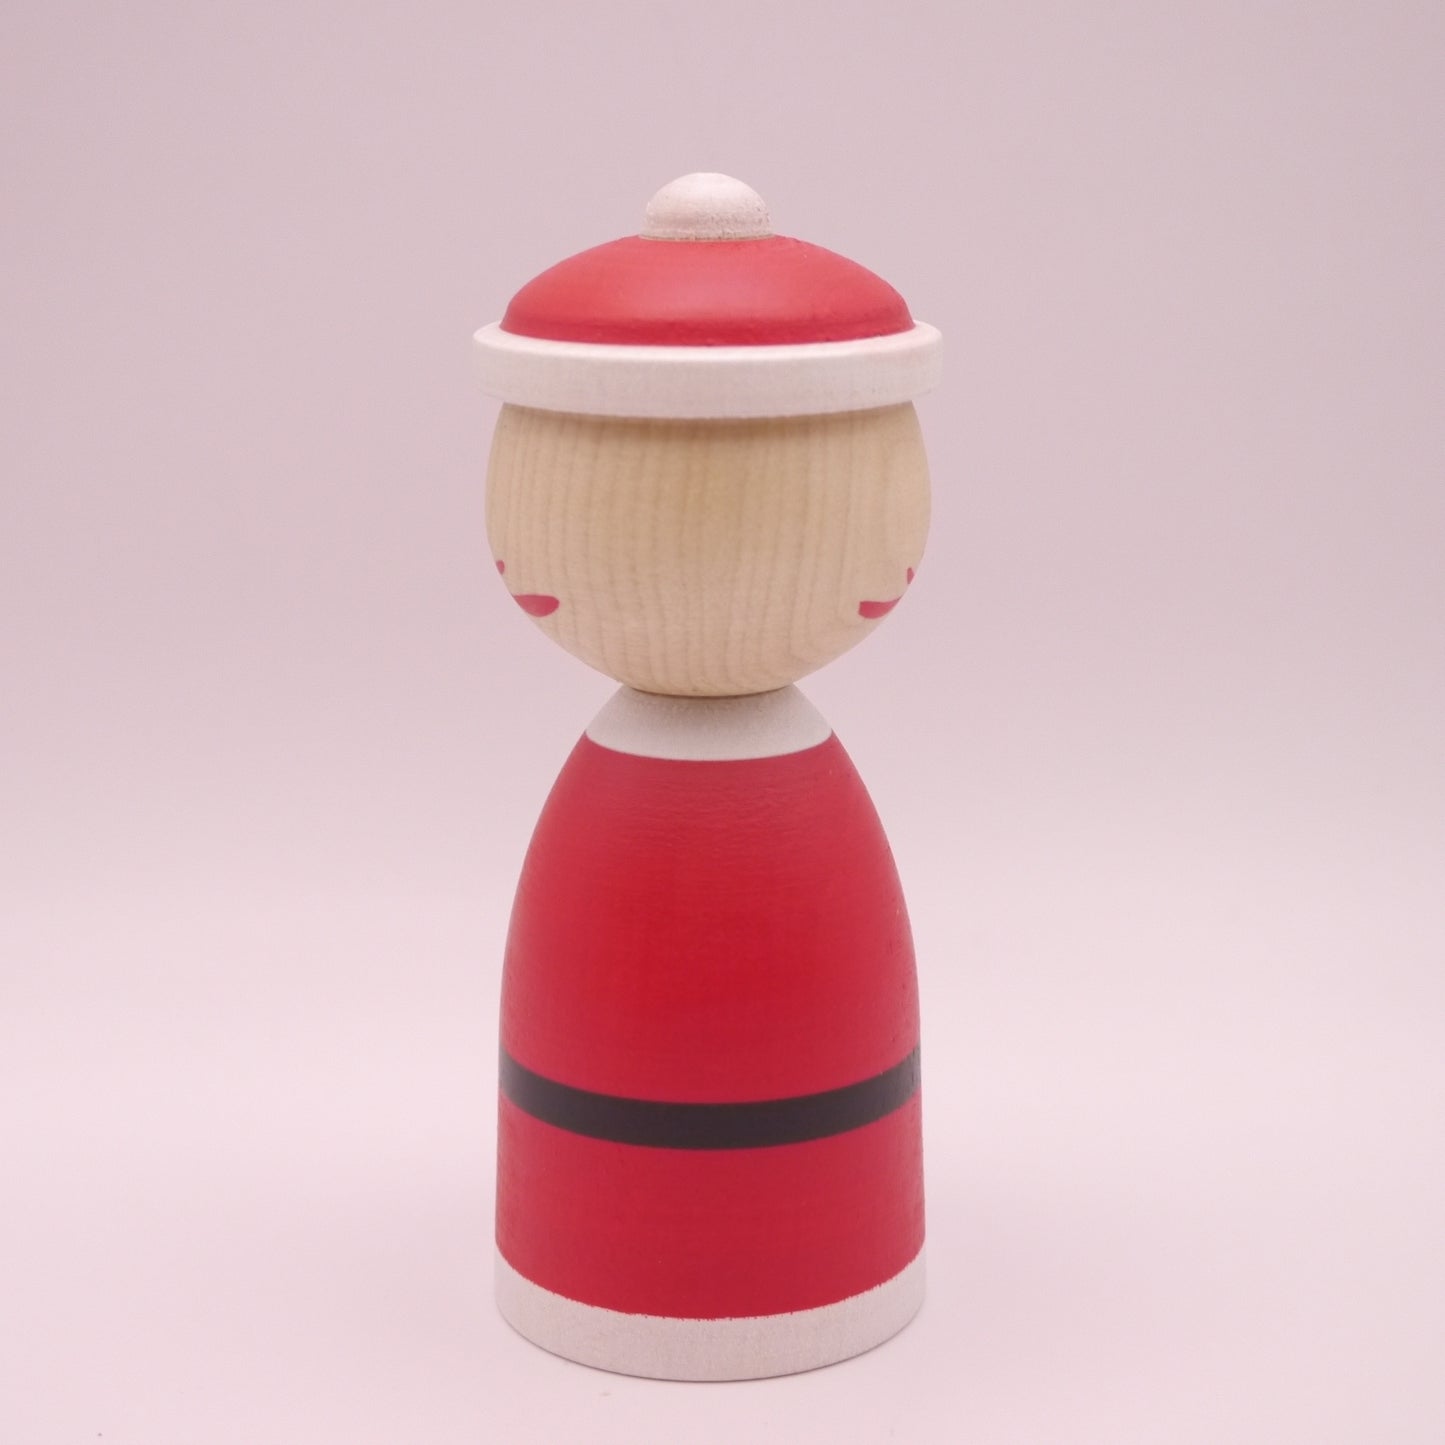 11cm Kokeshi Doll by Teruyuki Hiraga Xmas Santa